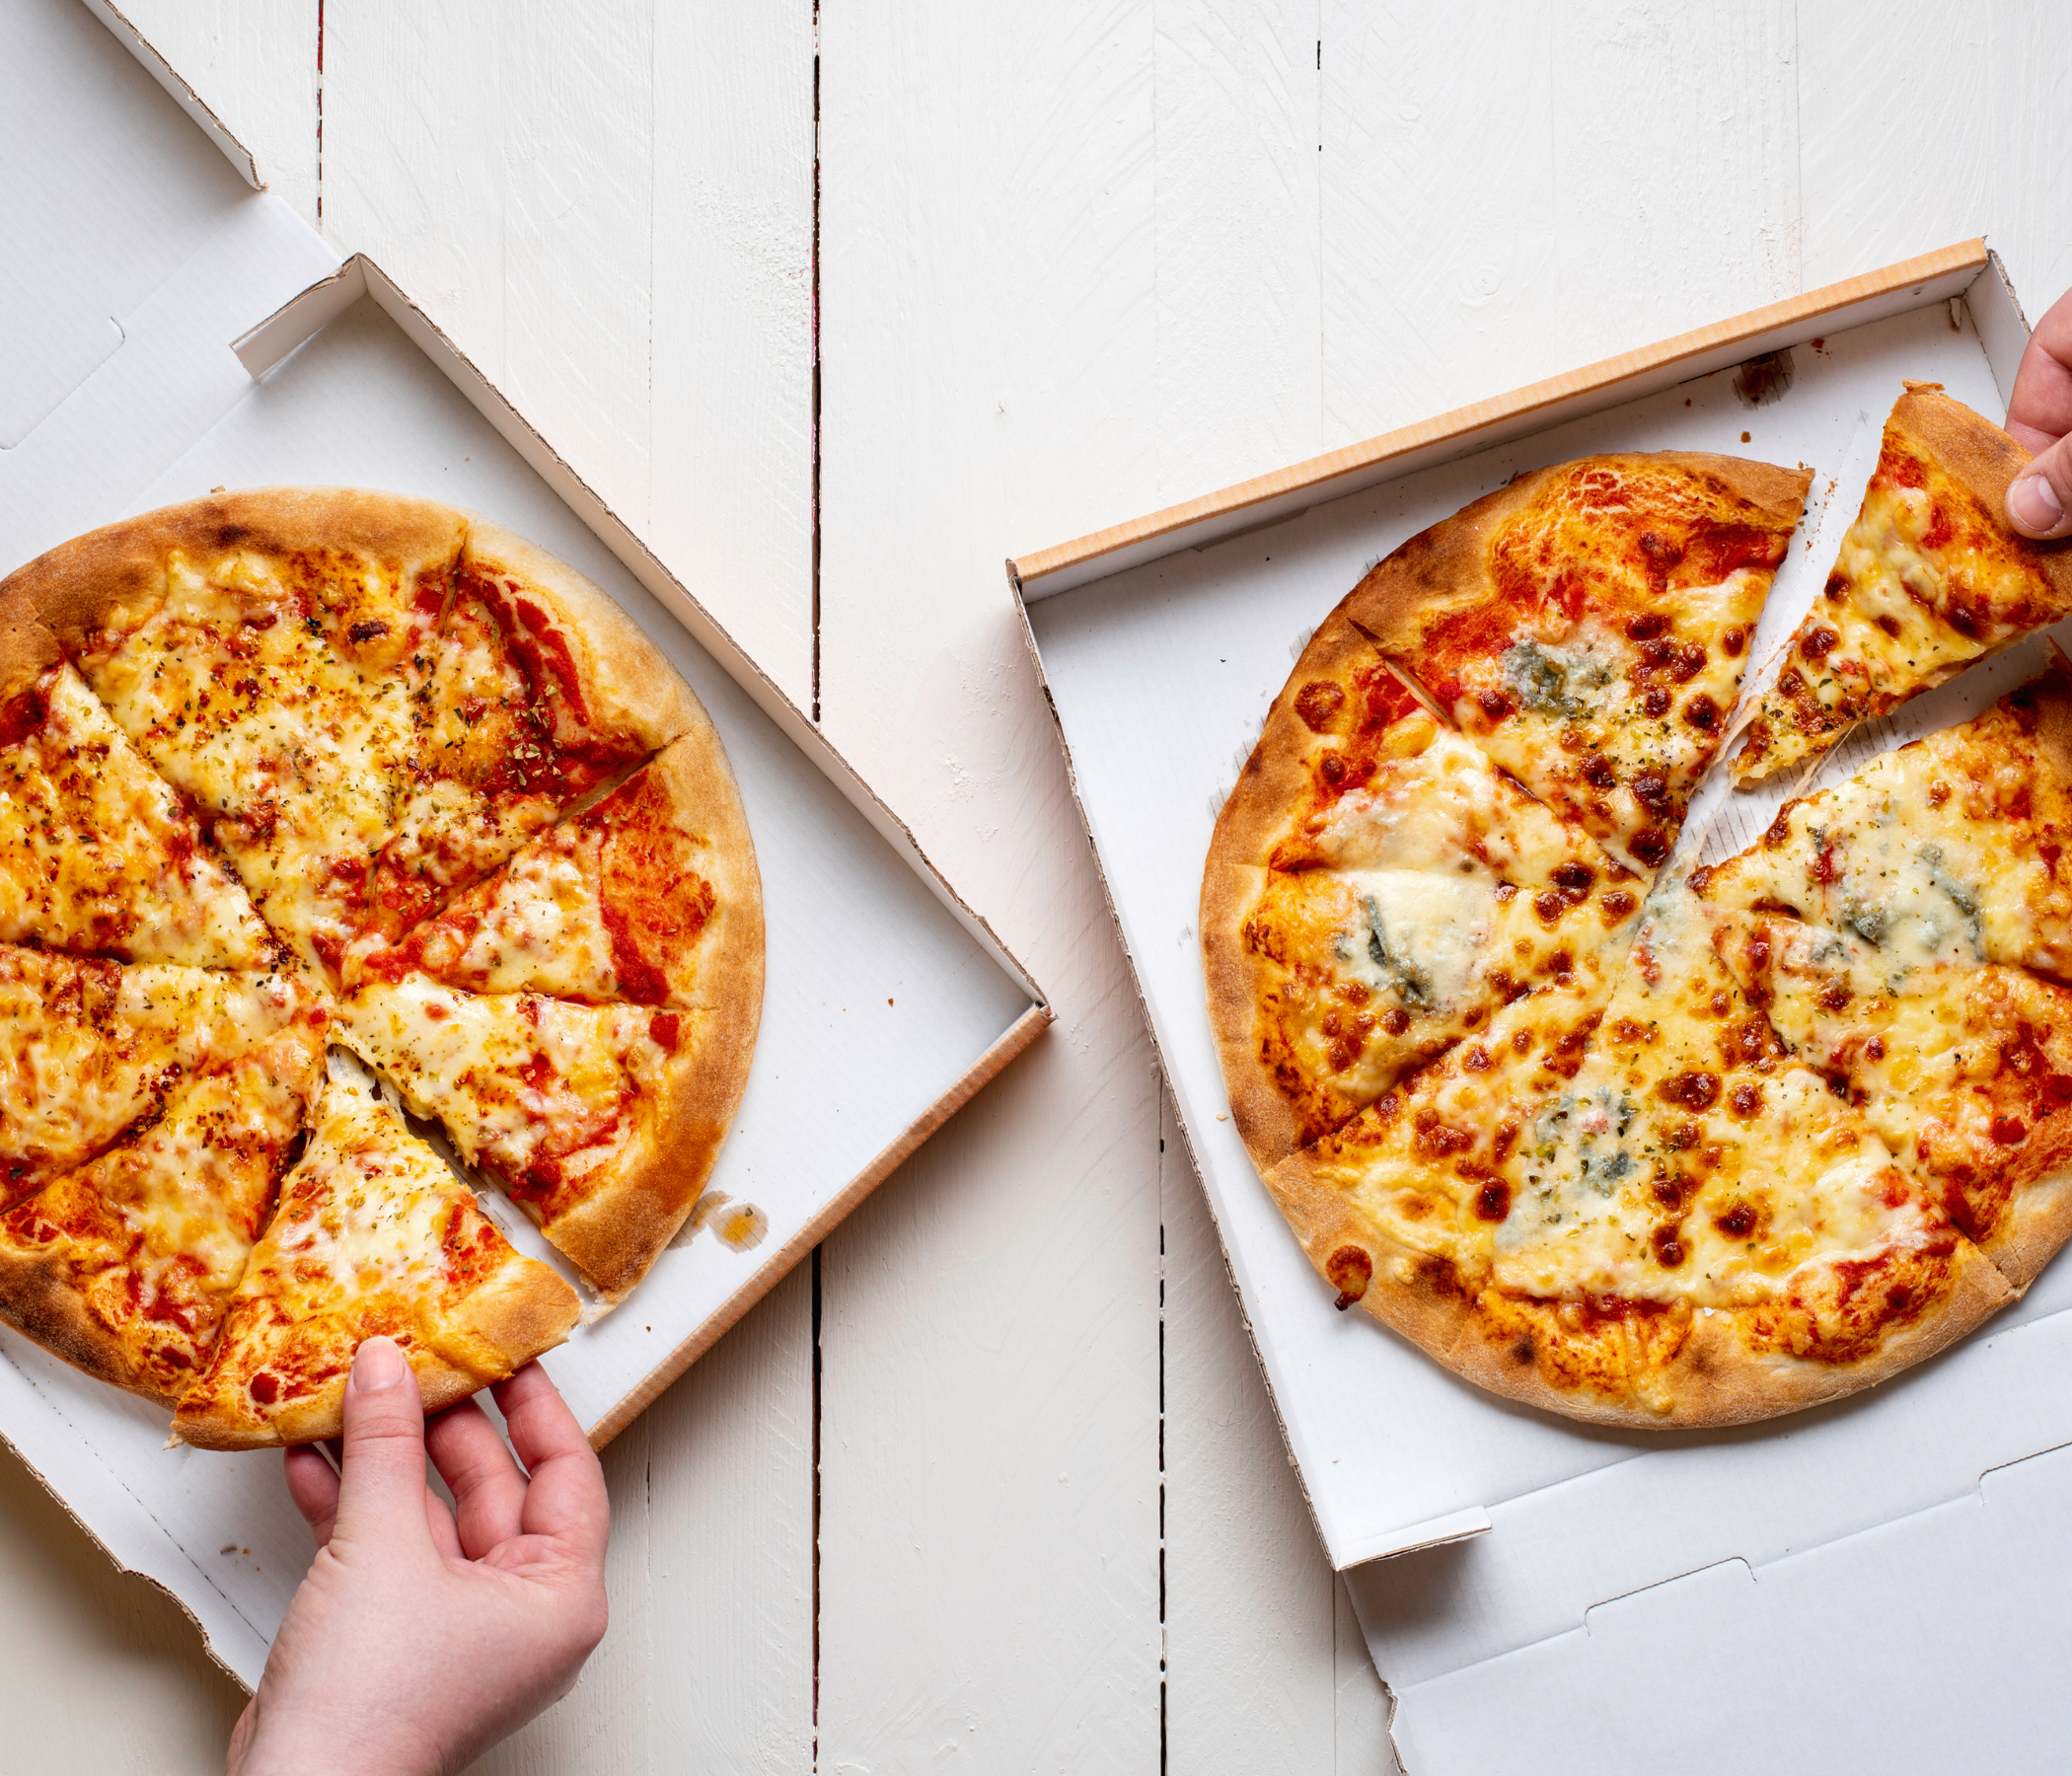 Il piatto più richiesto in delivery dagli italiani? Naturalmente la pizza!